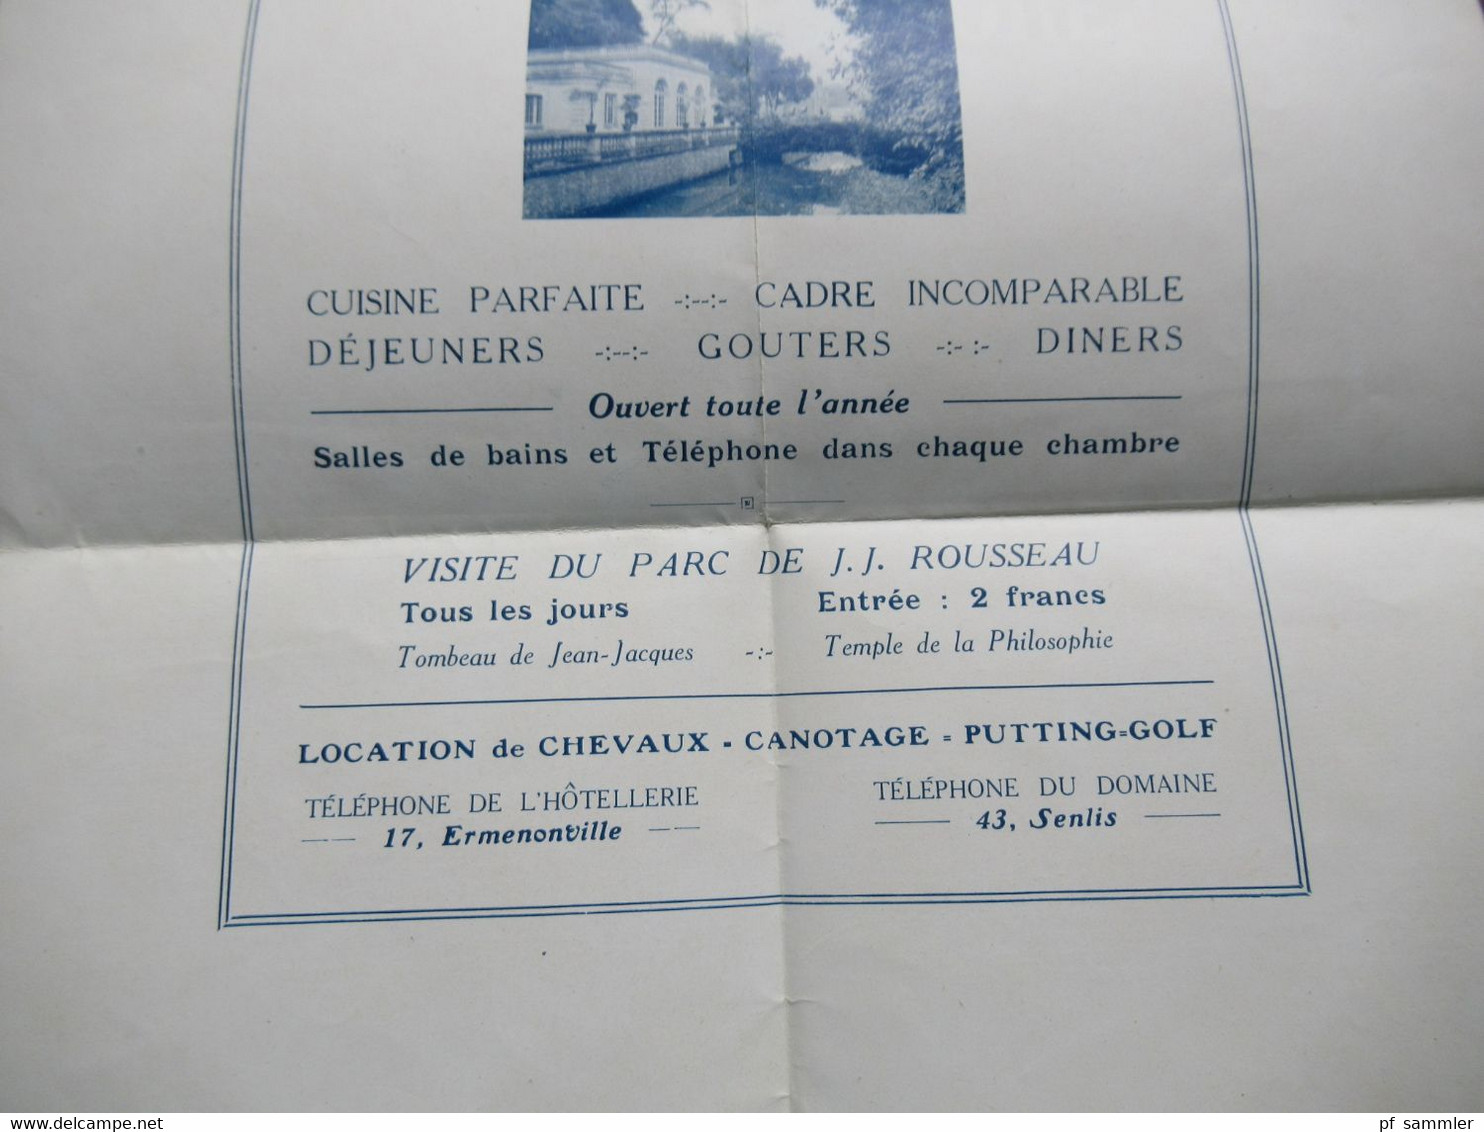 Hotel Werbung Plakat Un Joyau de l'Ile de France Ermenonville / Hotellerie Jean Jacques / Parc J.J. Rousseau ca. 1920